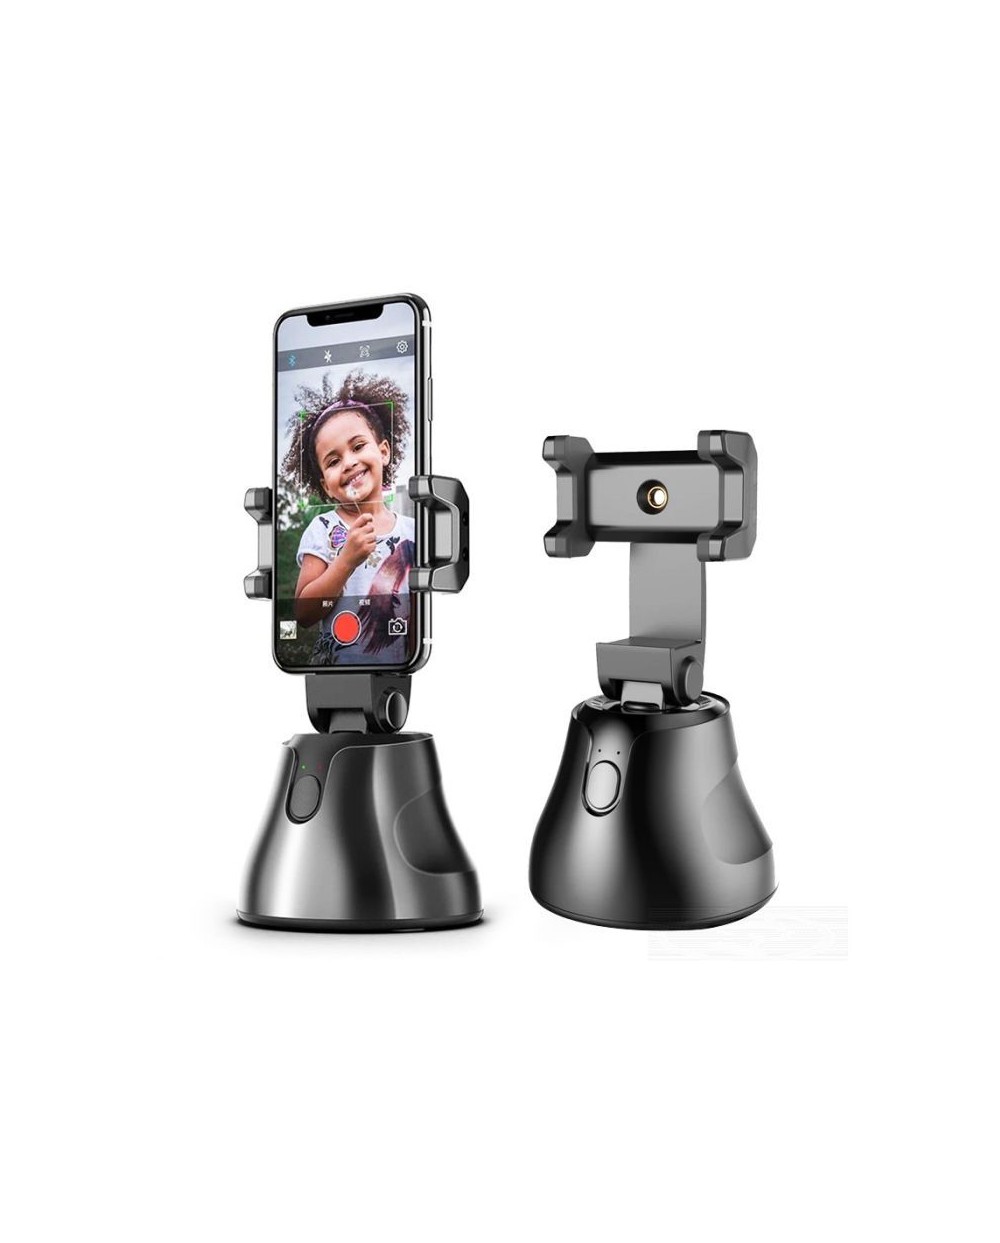 Έξυπνη περιστρεφόμενη βάση 360° για smartphones Apai Genie Robot-Cameraman